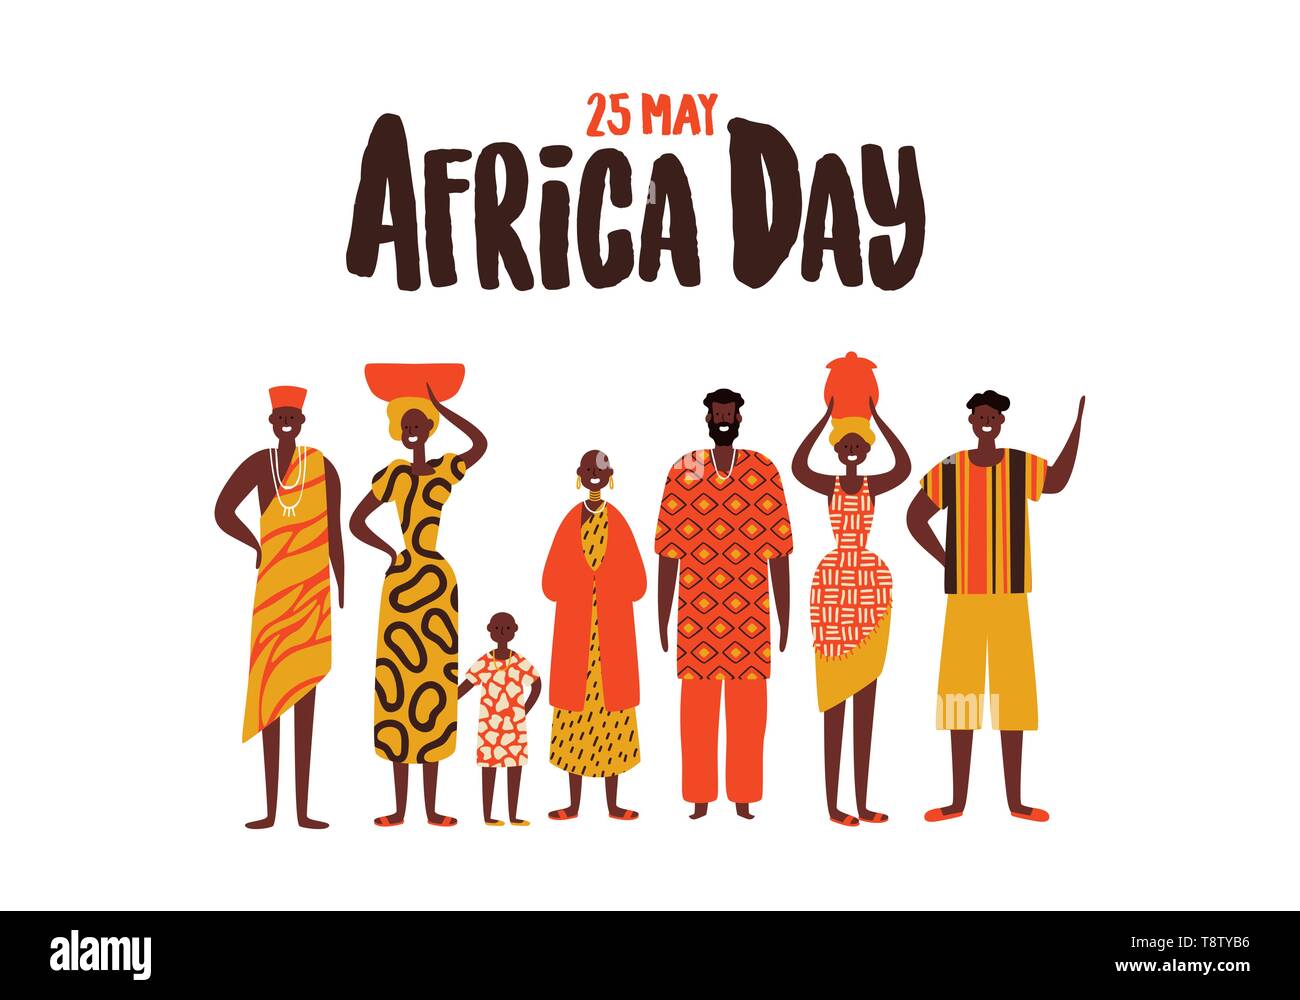 La Journée de l'Afrique Carte de souhaits illustration avec les peuples africains. Diversité des hommes et des femmes dans le groupe ethnique traditionnelle pour vêtements de libération. Illustration de Vecteur